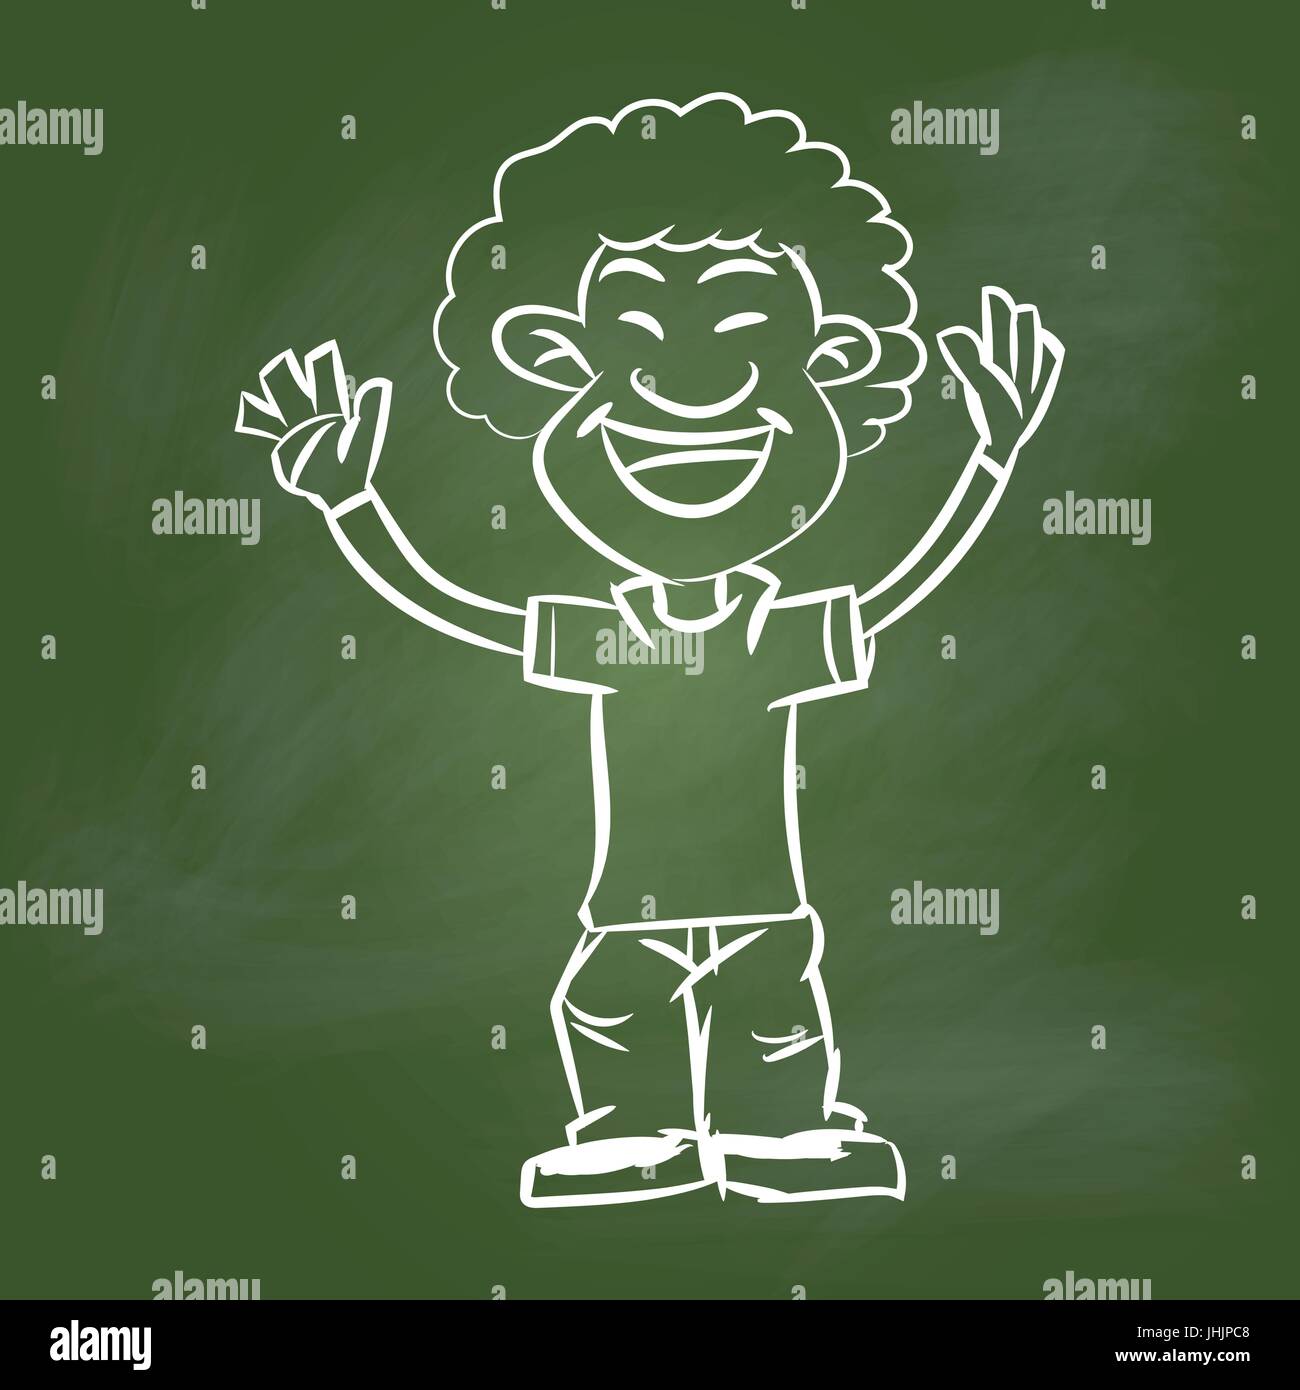 Handzeichnung von A Happy Man auf strukturierte grüner Grundplatte. Bildungskonzept, Vektor-Illustration Stock Vektor